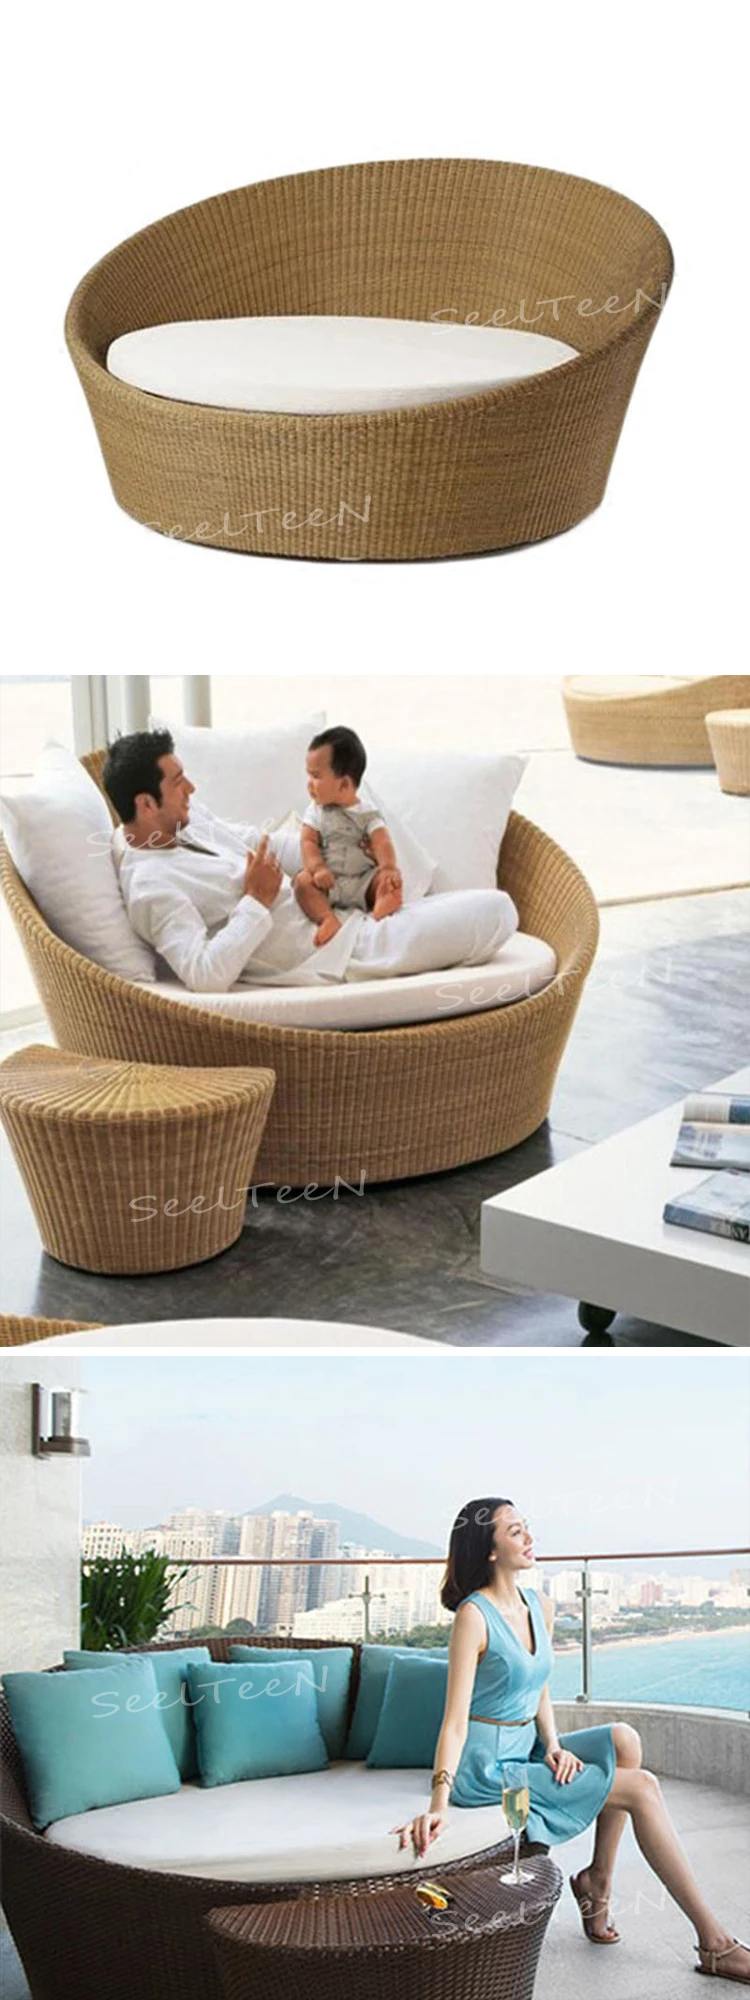 Leisure design rattan dining hotel garden chair outdoor furniture